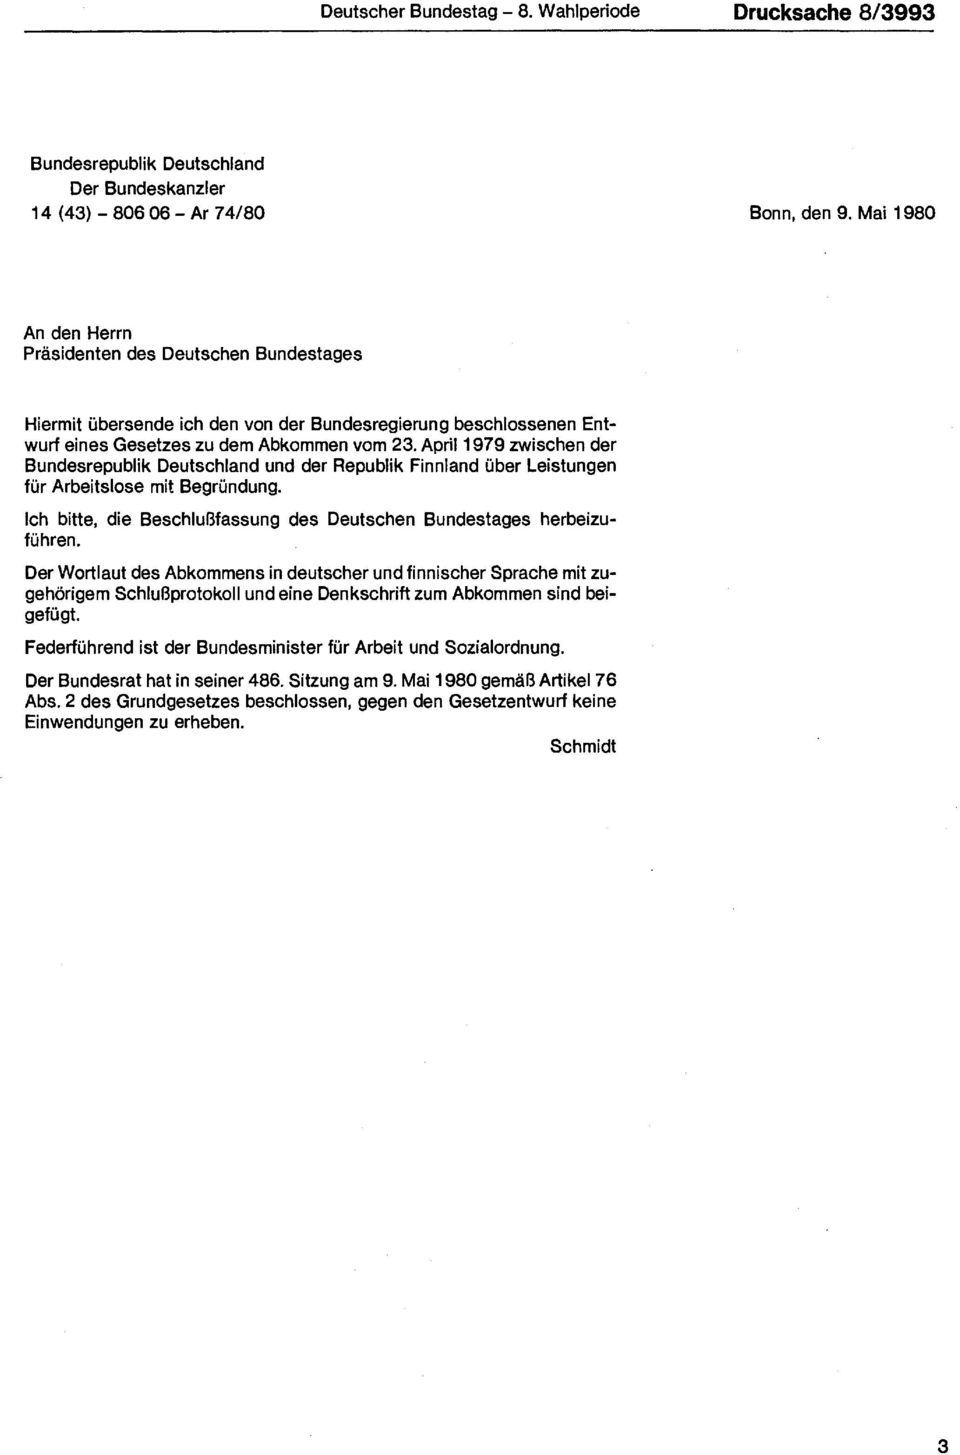 April 1979 zwischen der Bundesrepublik Deutschland und der Republik Finnland über Leistungen für Arbeitslose mit Begründung. Ich bitte, die Beschlußfassung des Deutschen Bundestages herbeizuführen.